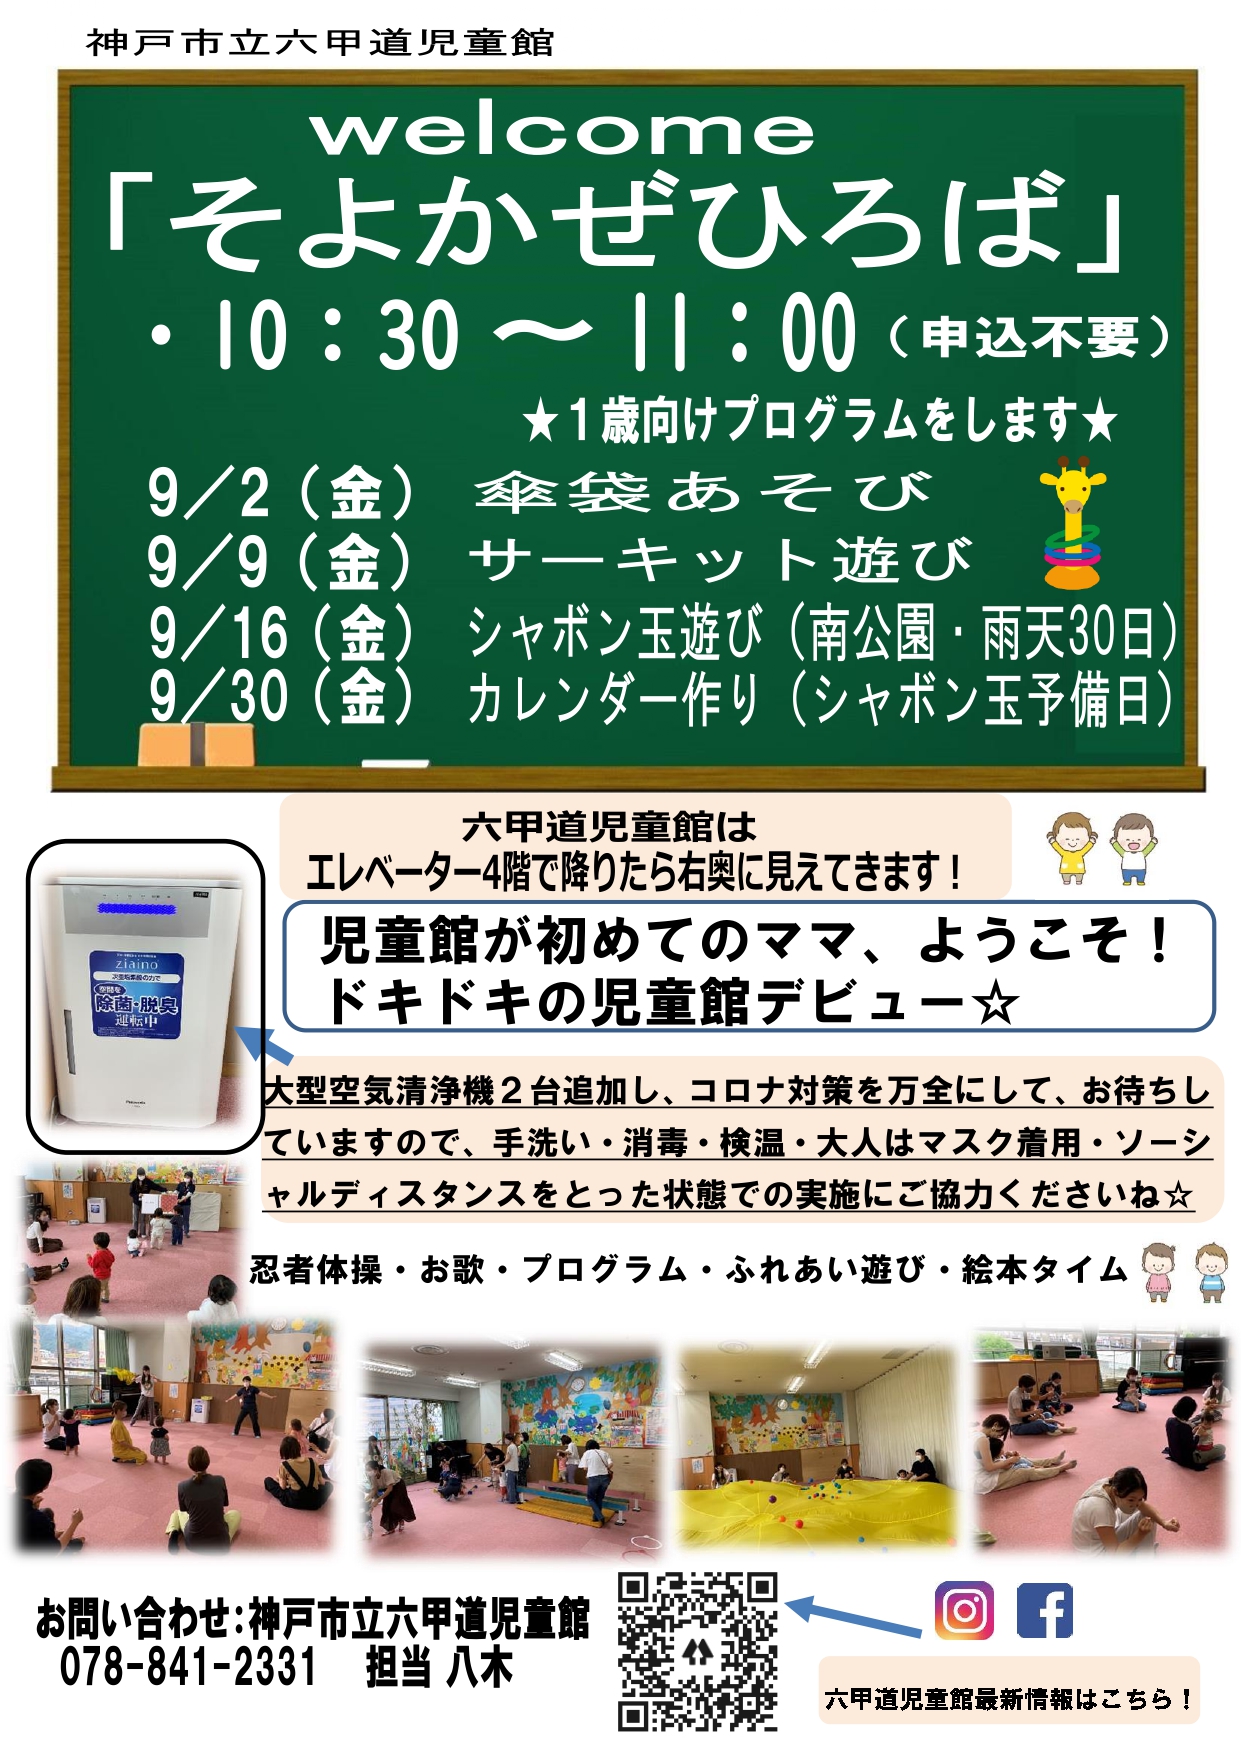 神戸市立六甲道児童館「そよかぜひろば」